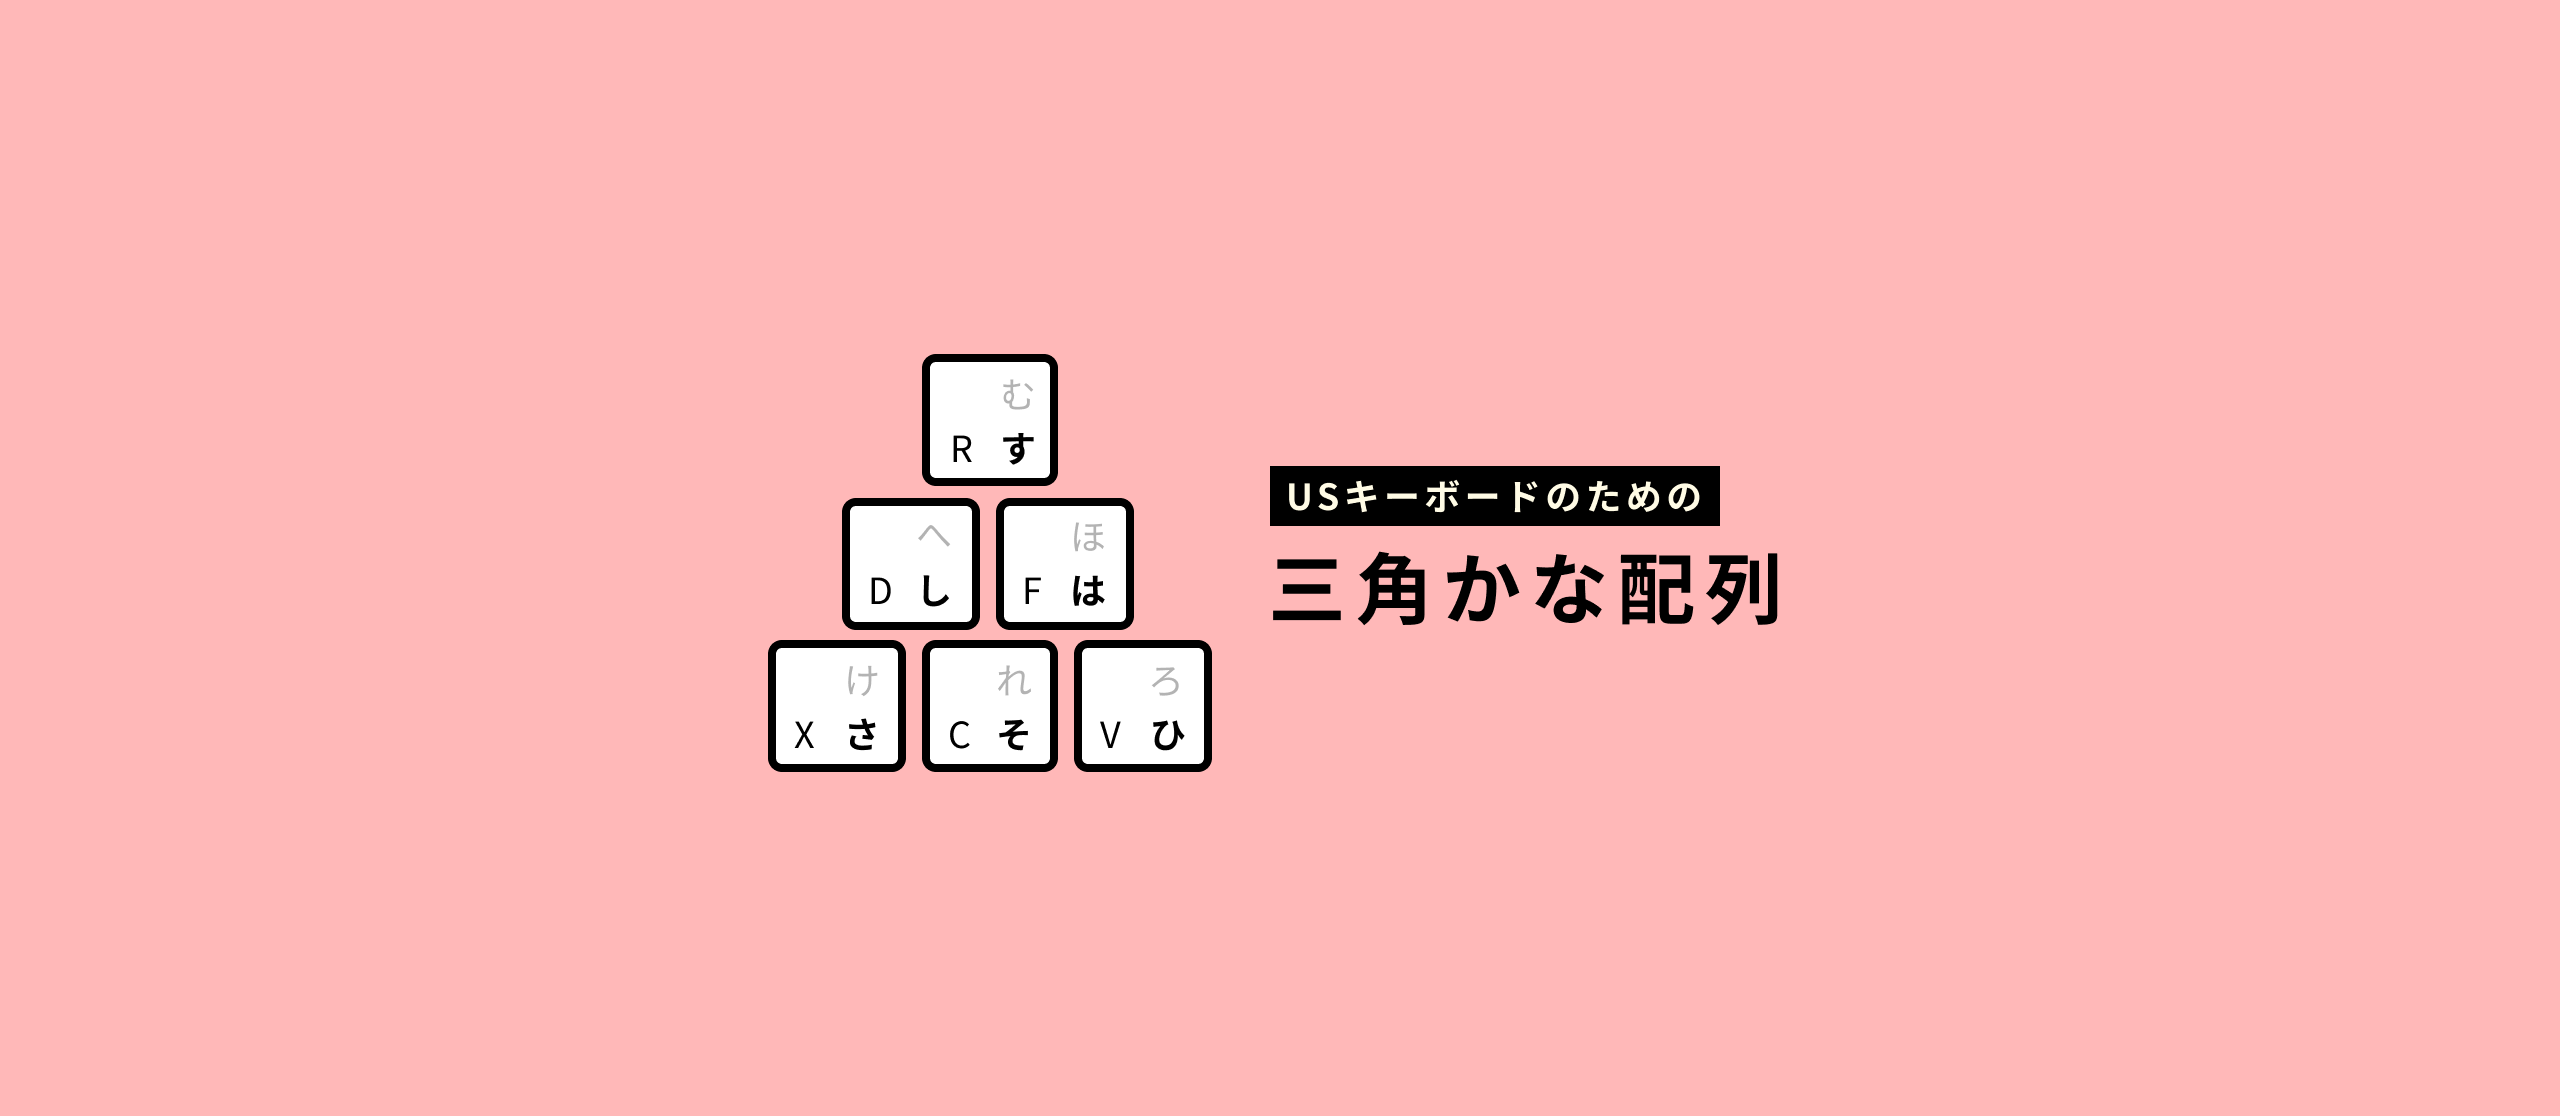 さよなら日本語キーボード Usキーボードのための はんそく カナ配列の提案 By Tsutomu Kawamura Medium